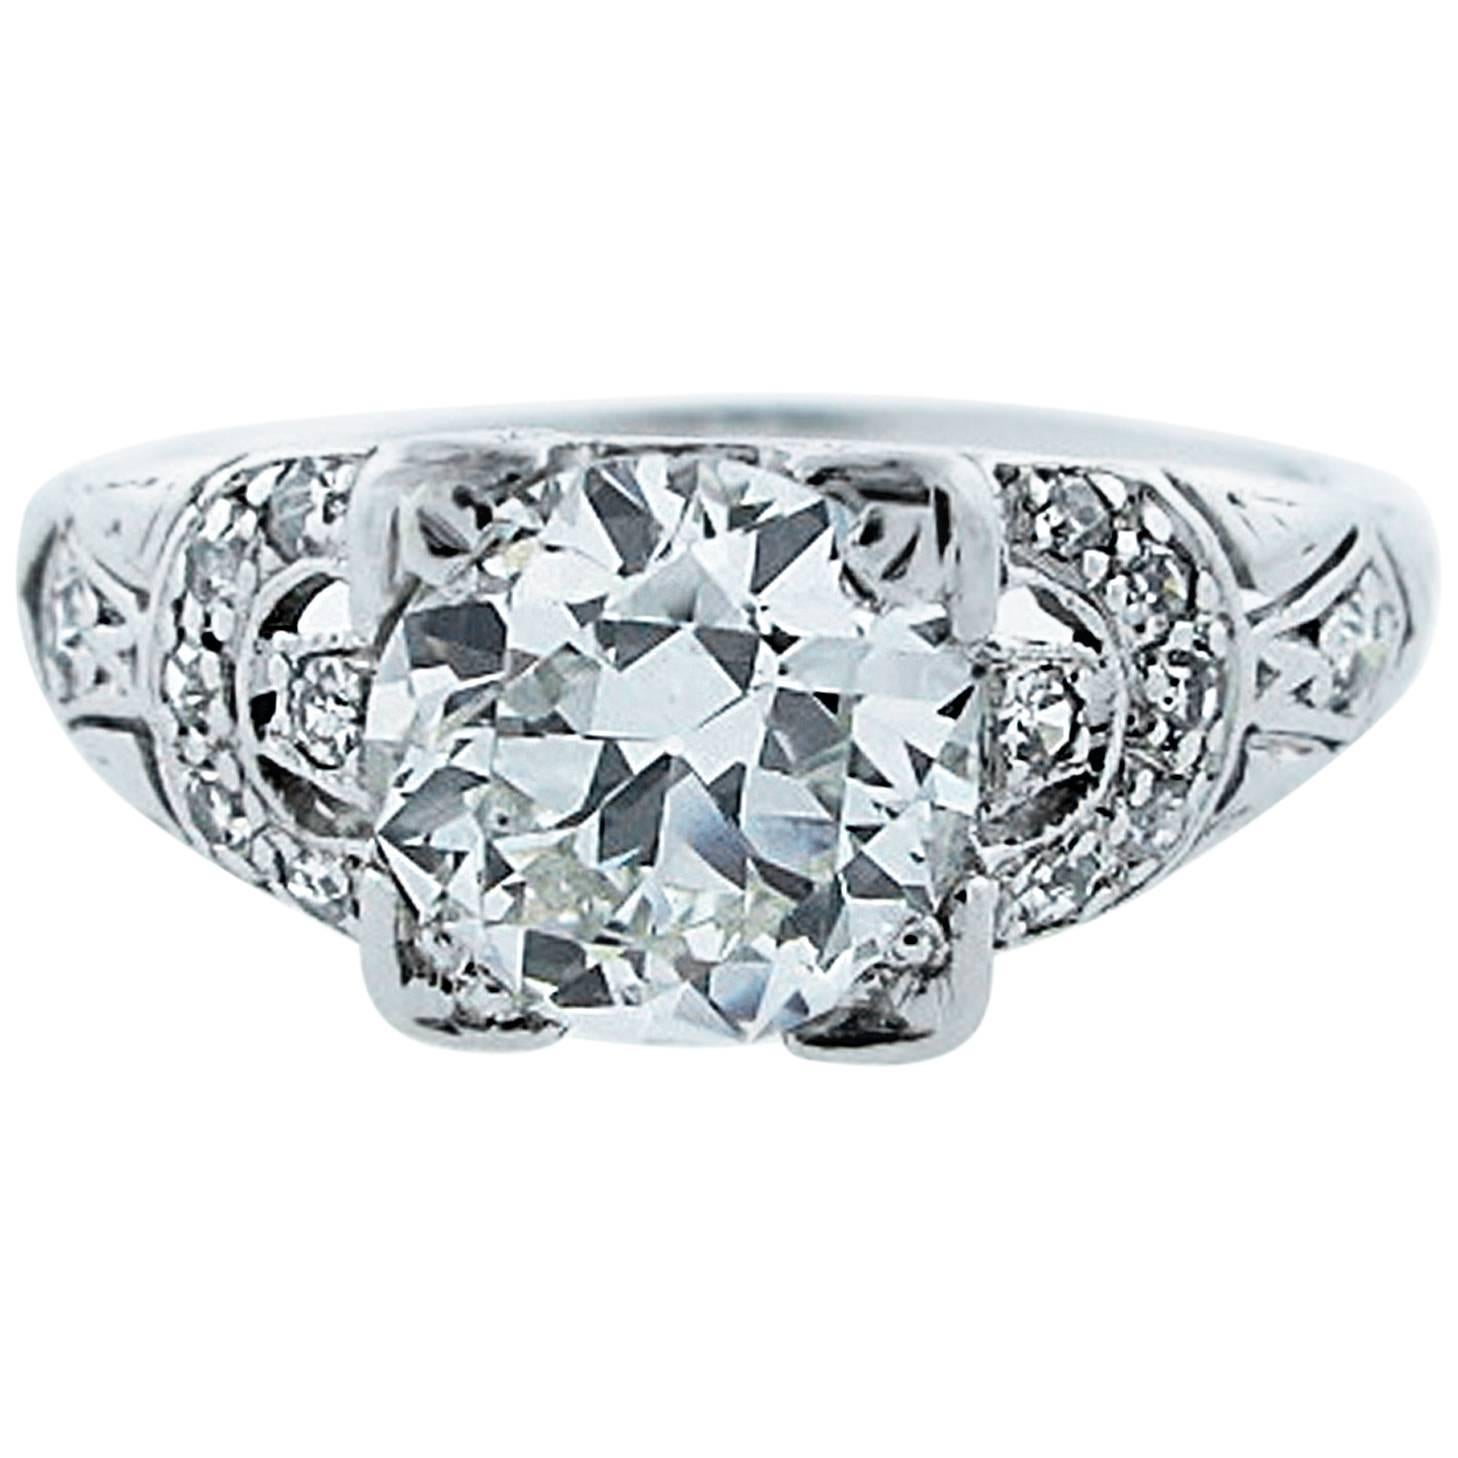 Engaging Art Deco 1.3 Carat Diamond Platinum Ring For Sale